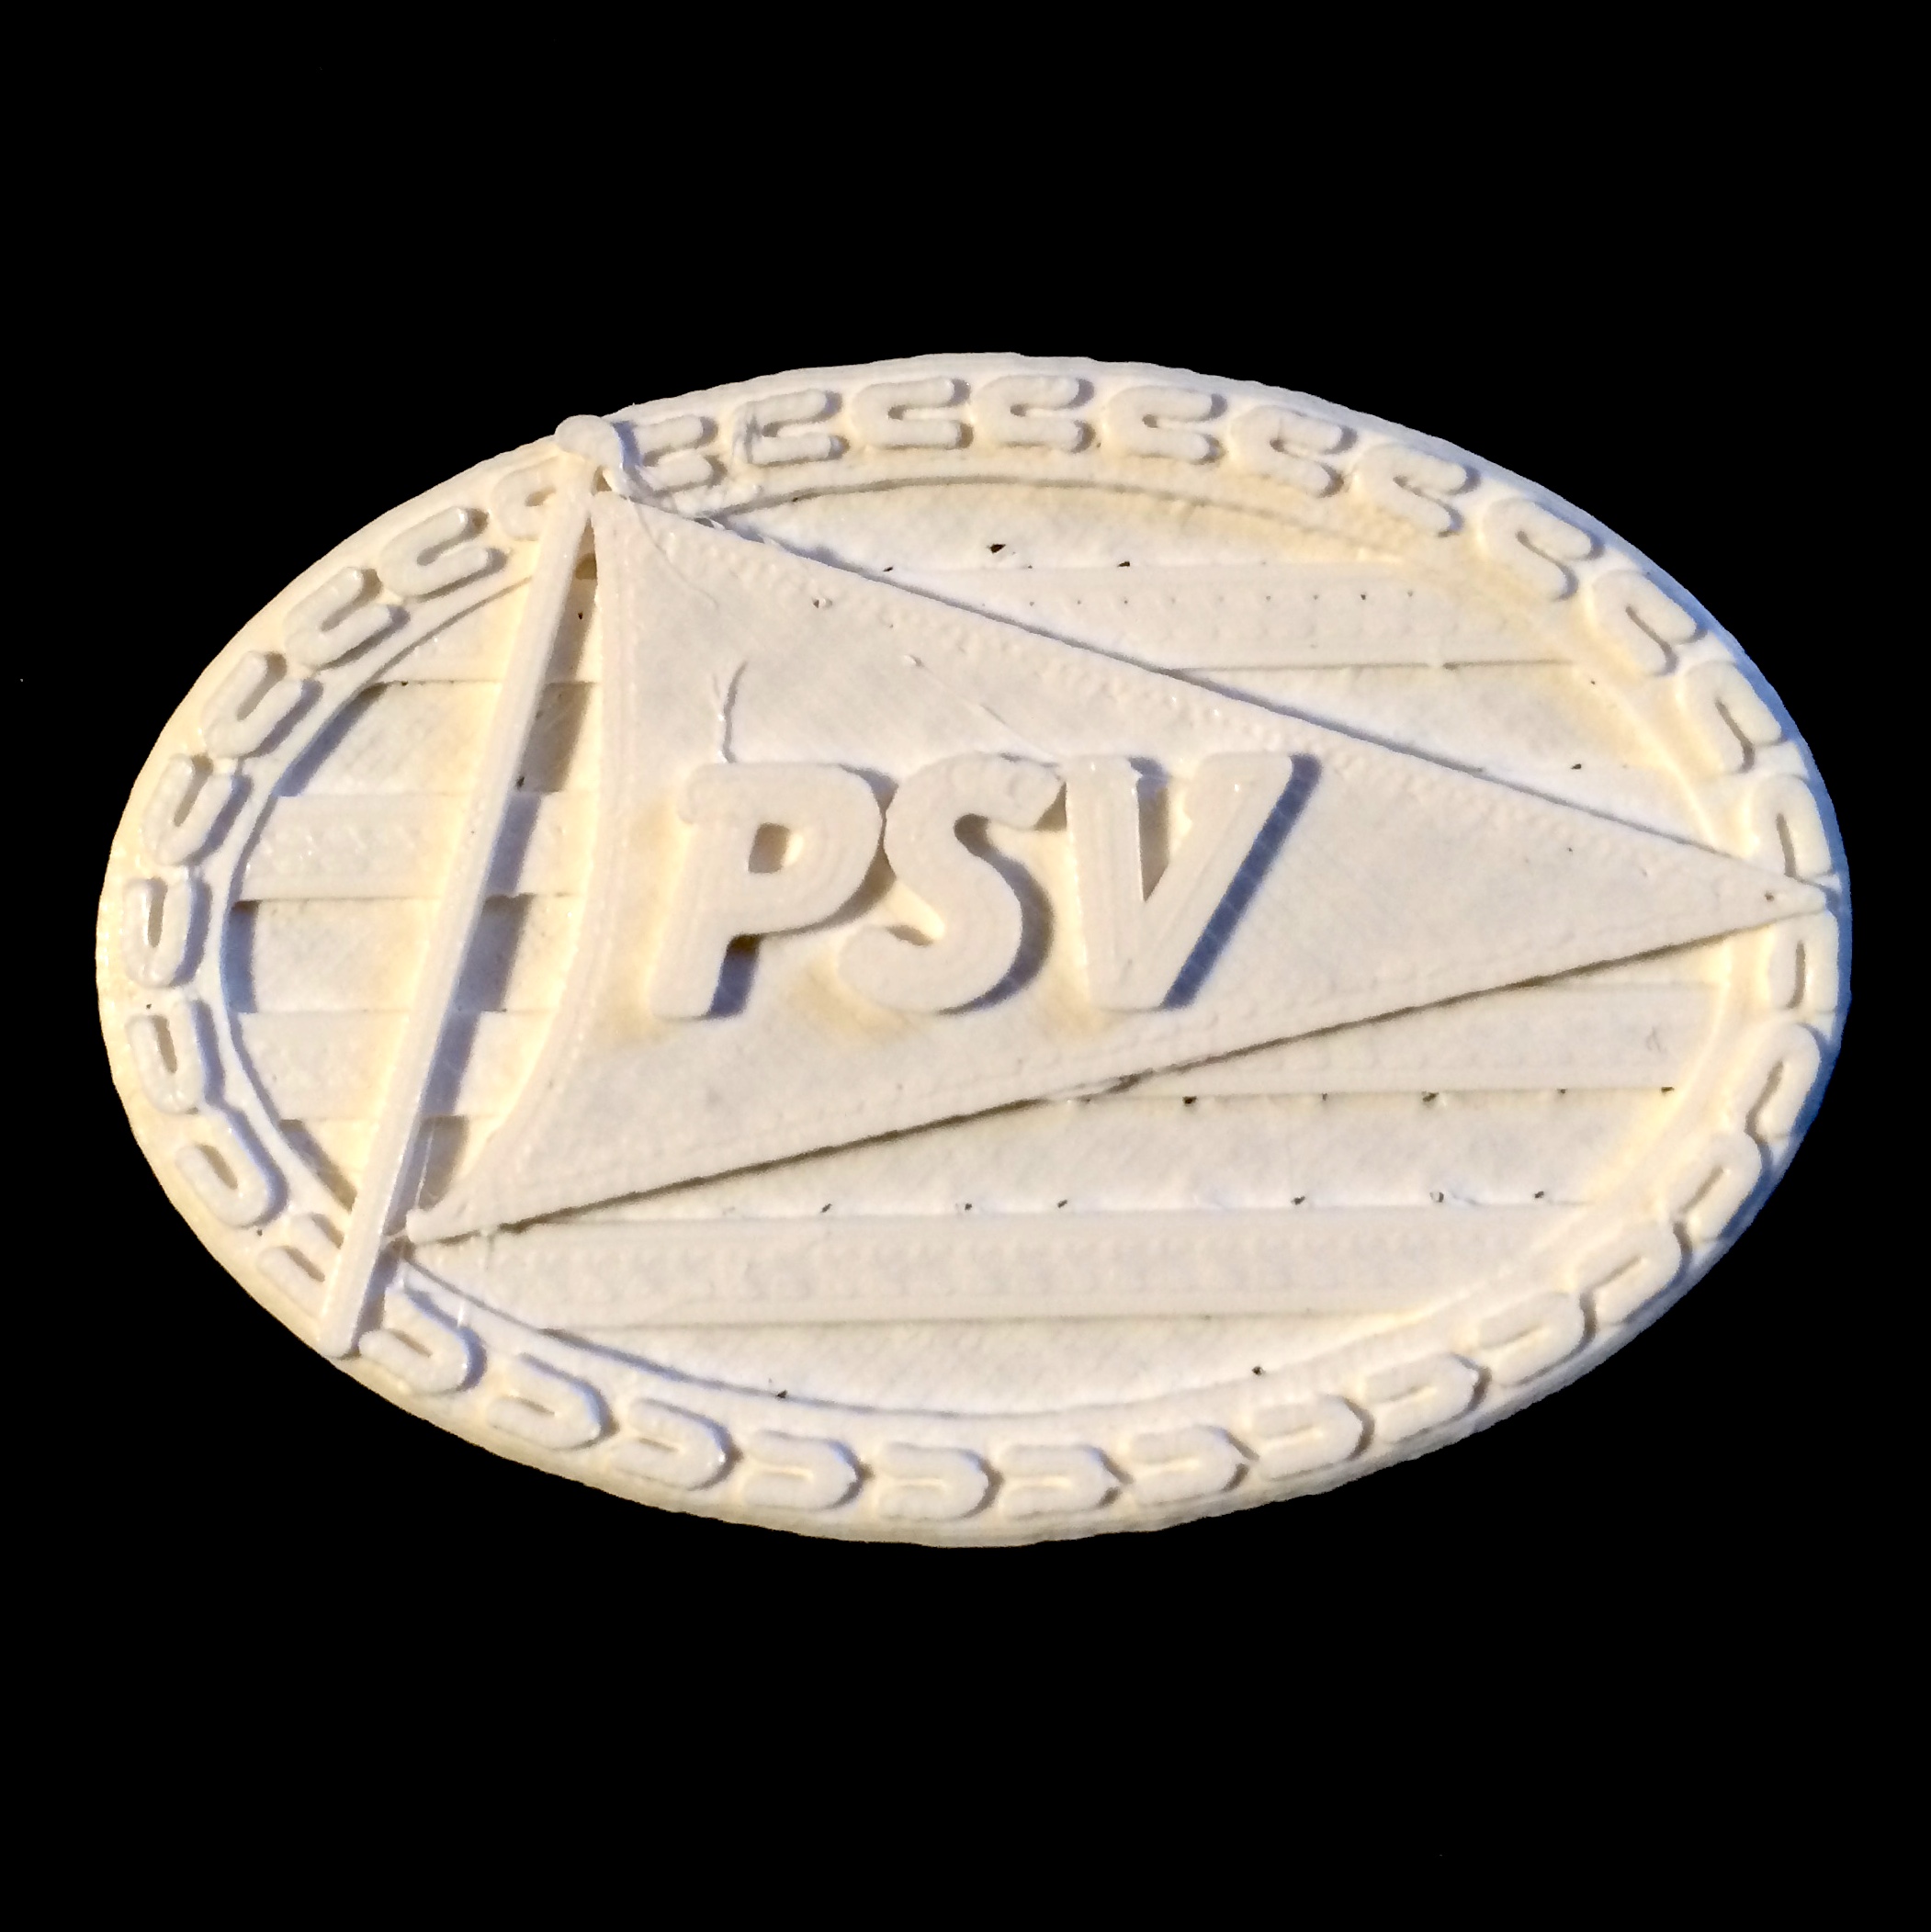 PSV Eindhoven - Logo